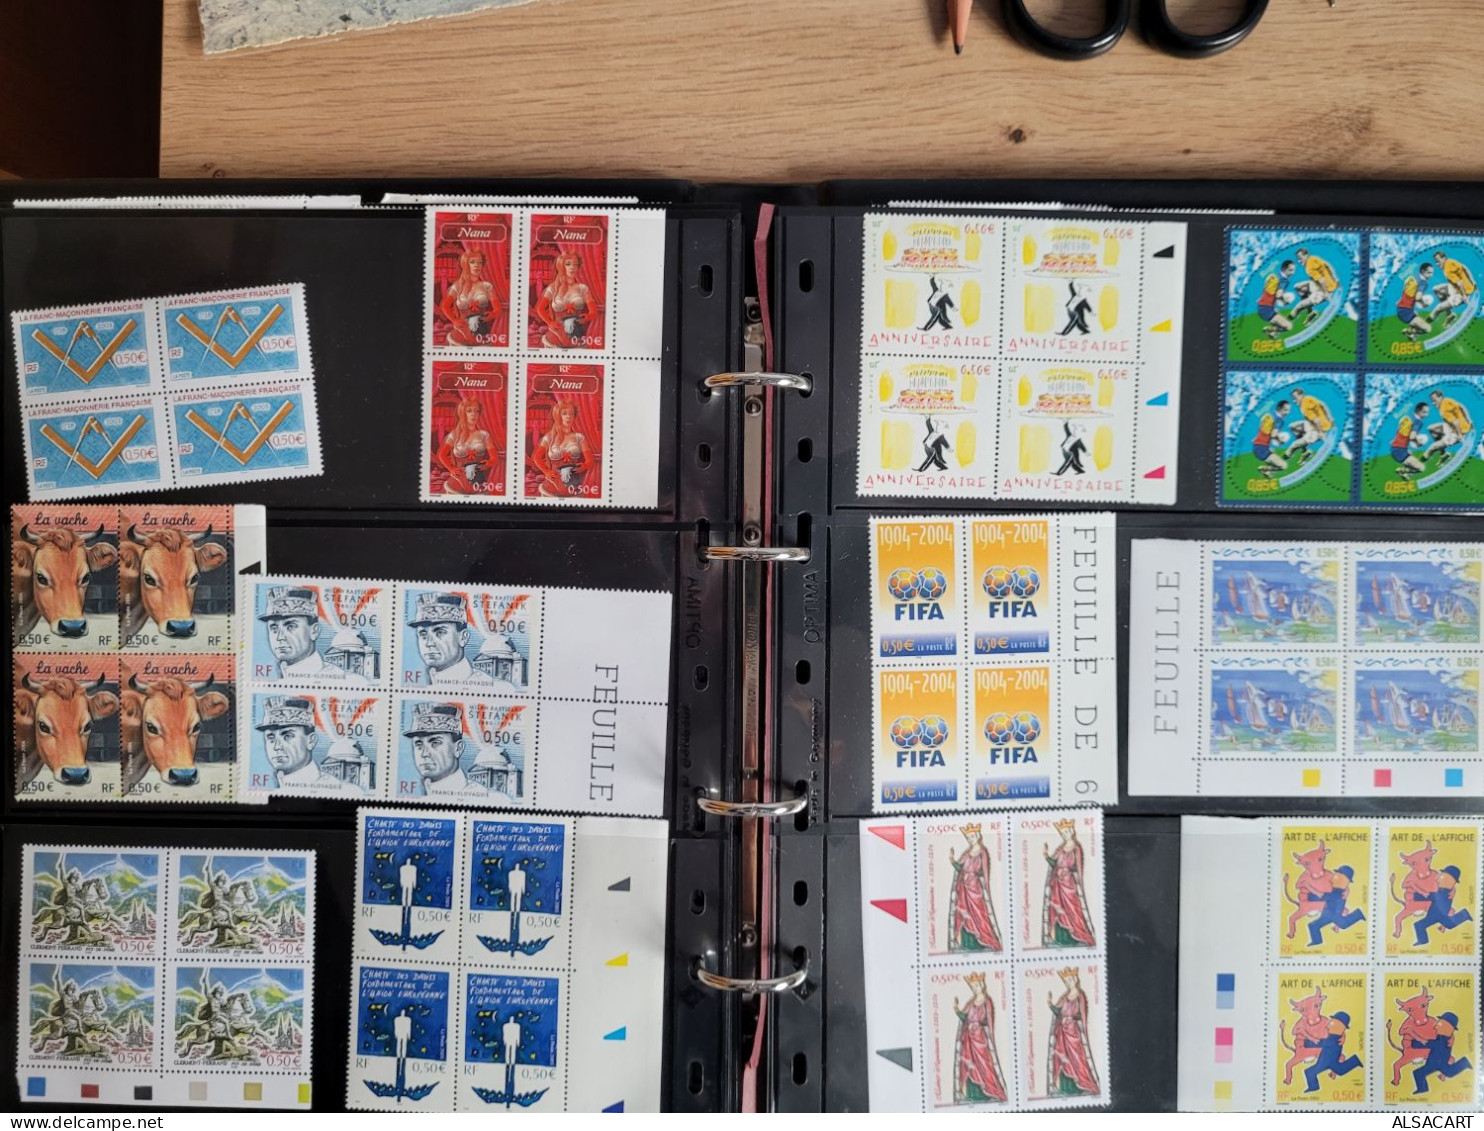 vend collection de blocs de 4 et quelques bandes de timbres français , sous faciale , faciale environs 250 euros